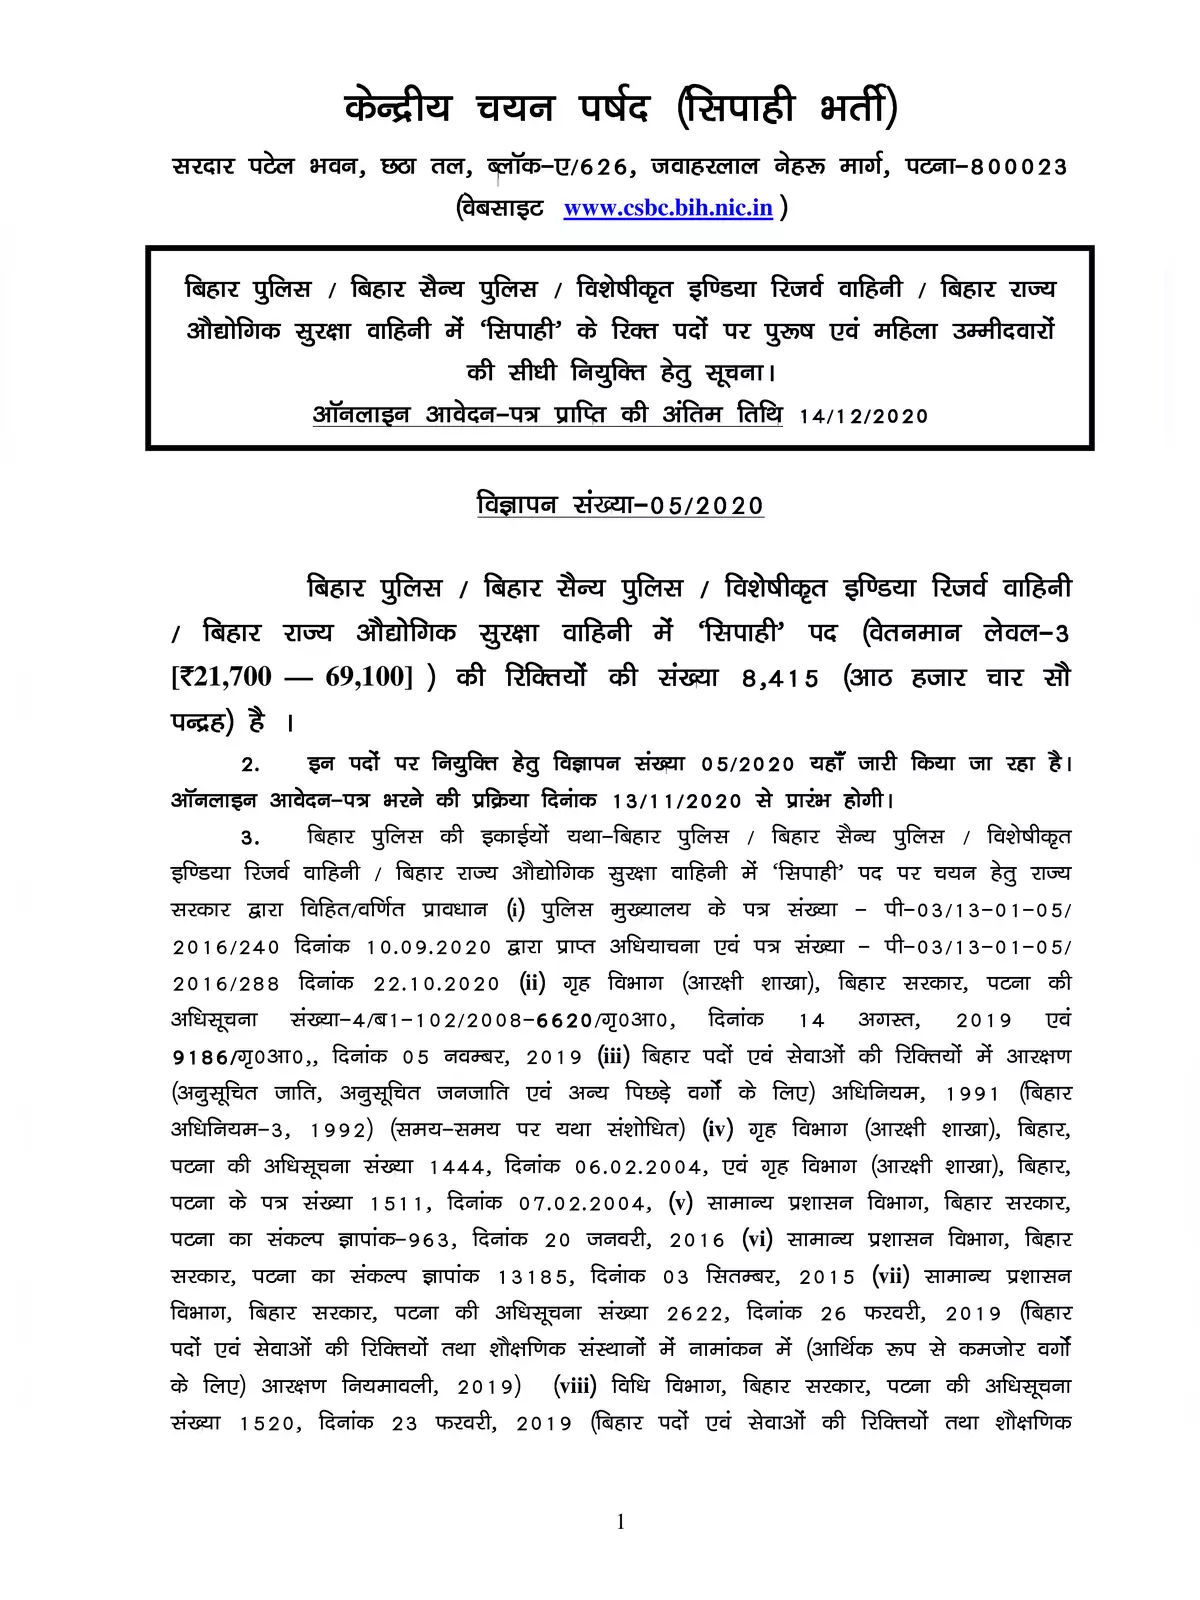 Bihar Police Constable Recruitment Notification 2020 (CSBC)